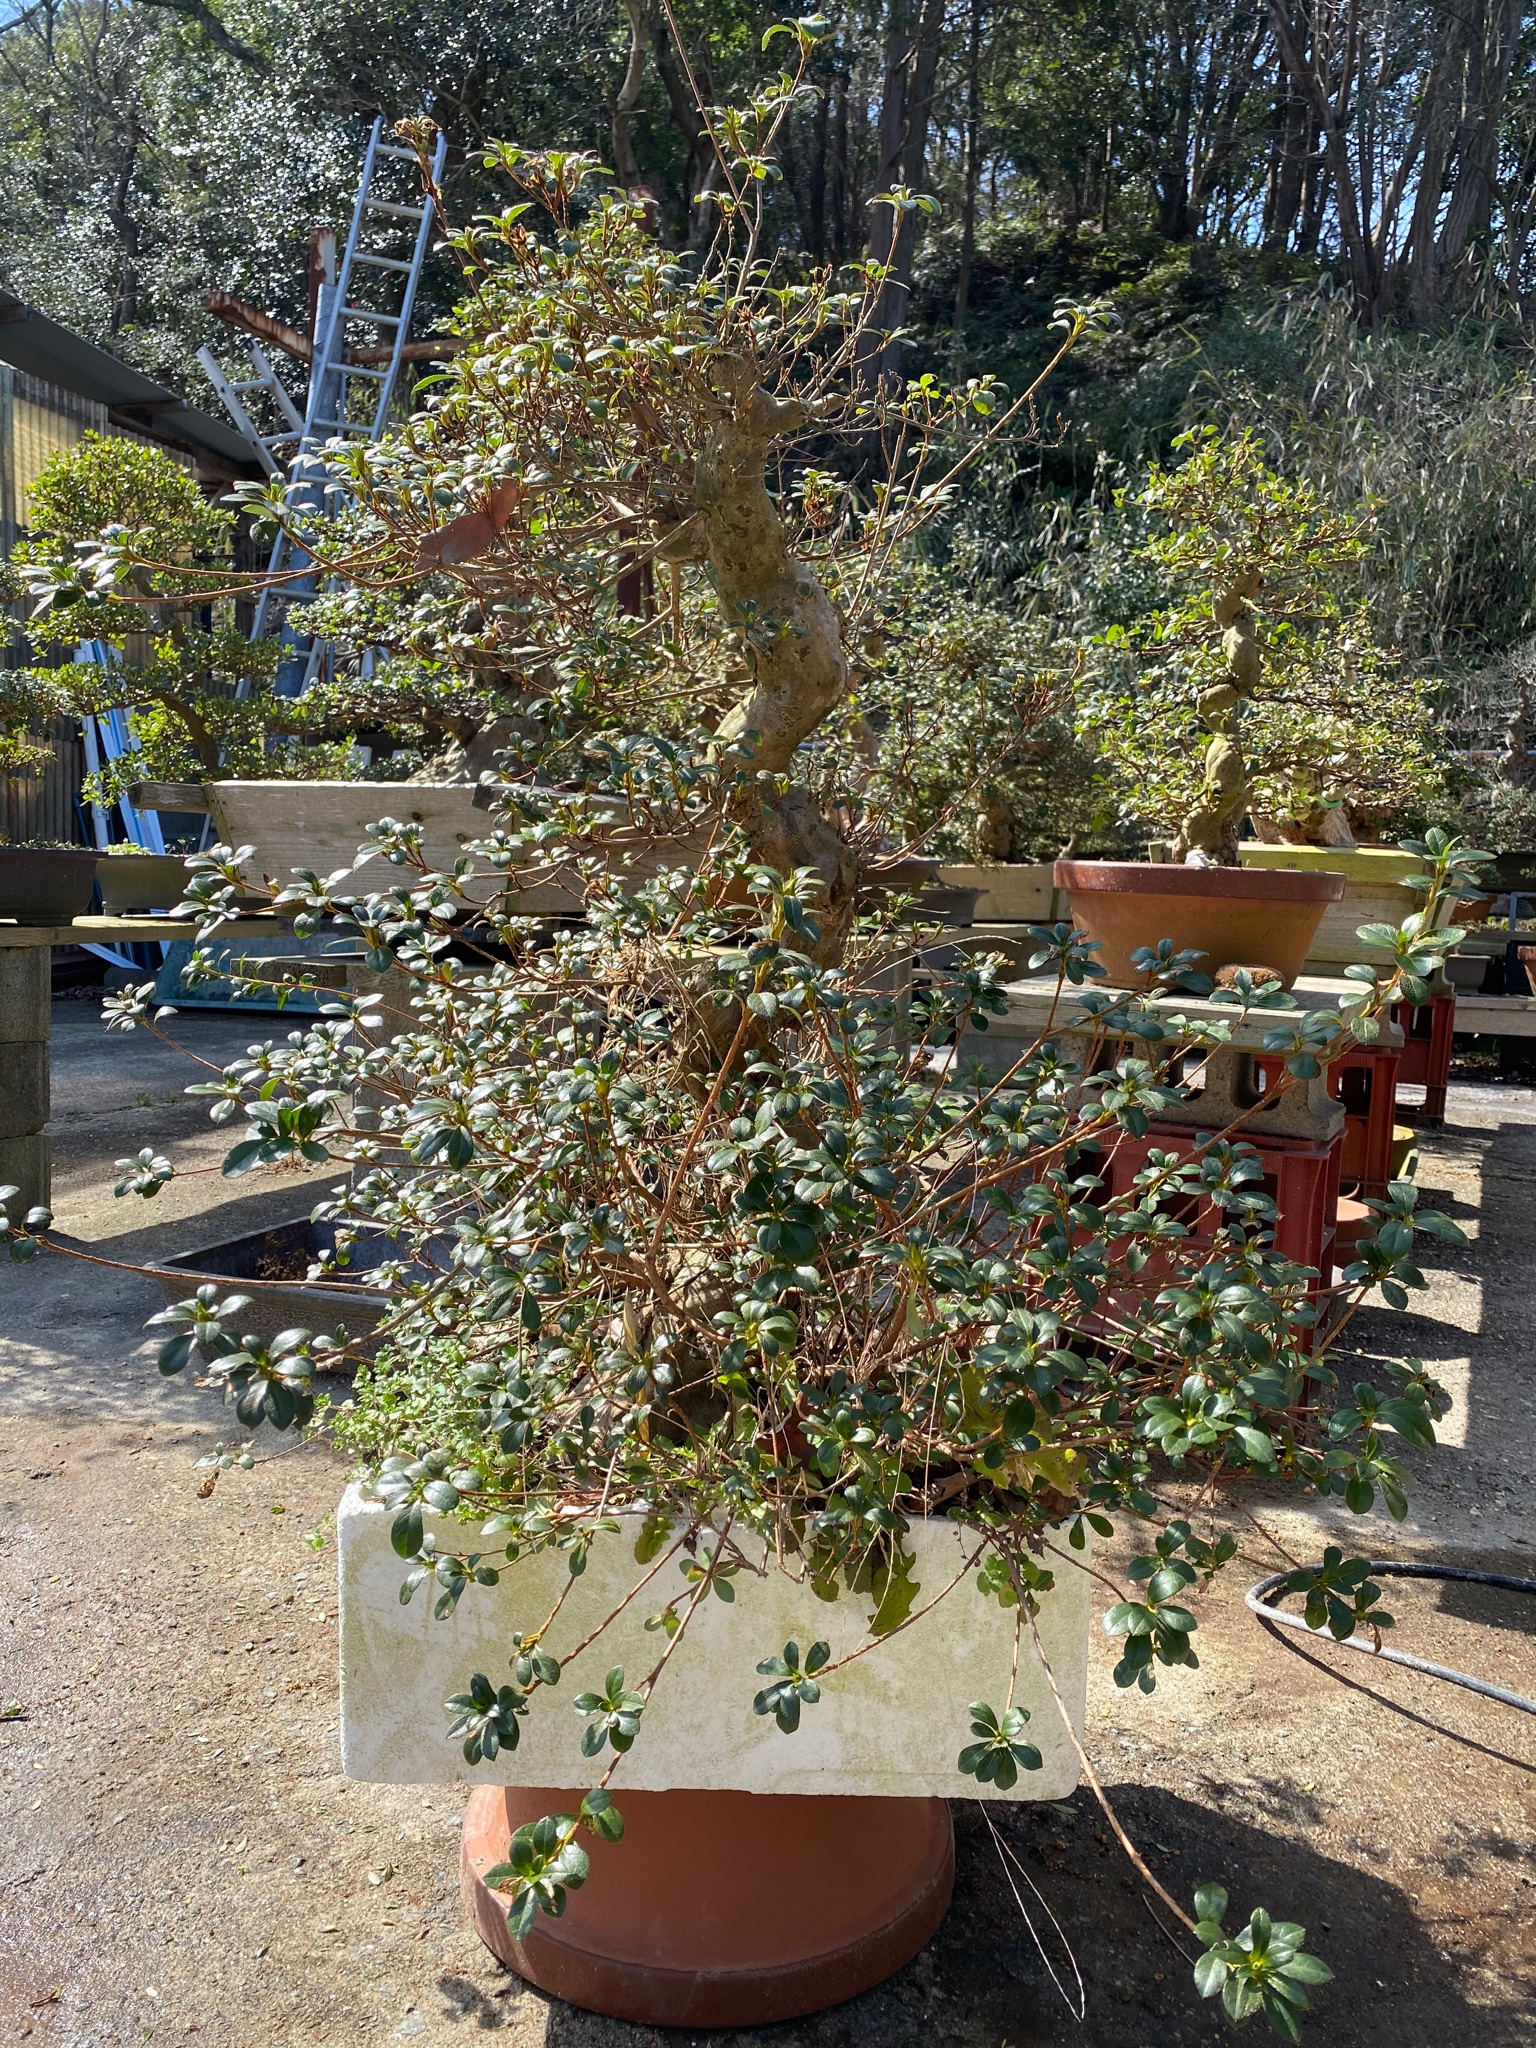 たけ 趣味の盆栽 新木 栄冠 の根洗いからの植え替え これだけ切っても樹高80センチ 根張りは殆ど隠れてますが 15号鉢でもギリギリです なかなかの大物っぷり 半日以上かかってしまいました でも新木ってなんか楽しい 夢が広がります 盆栽